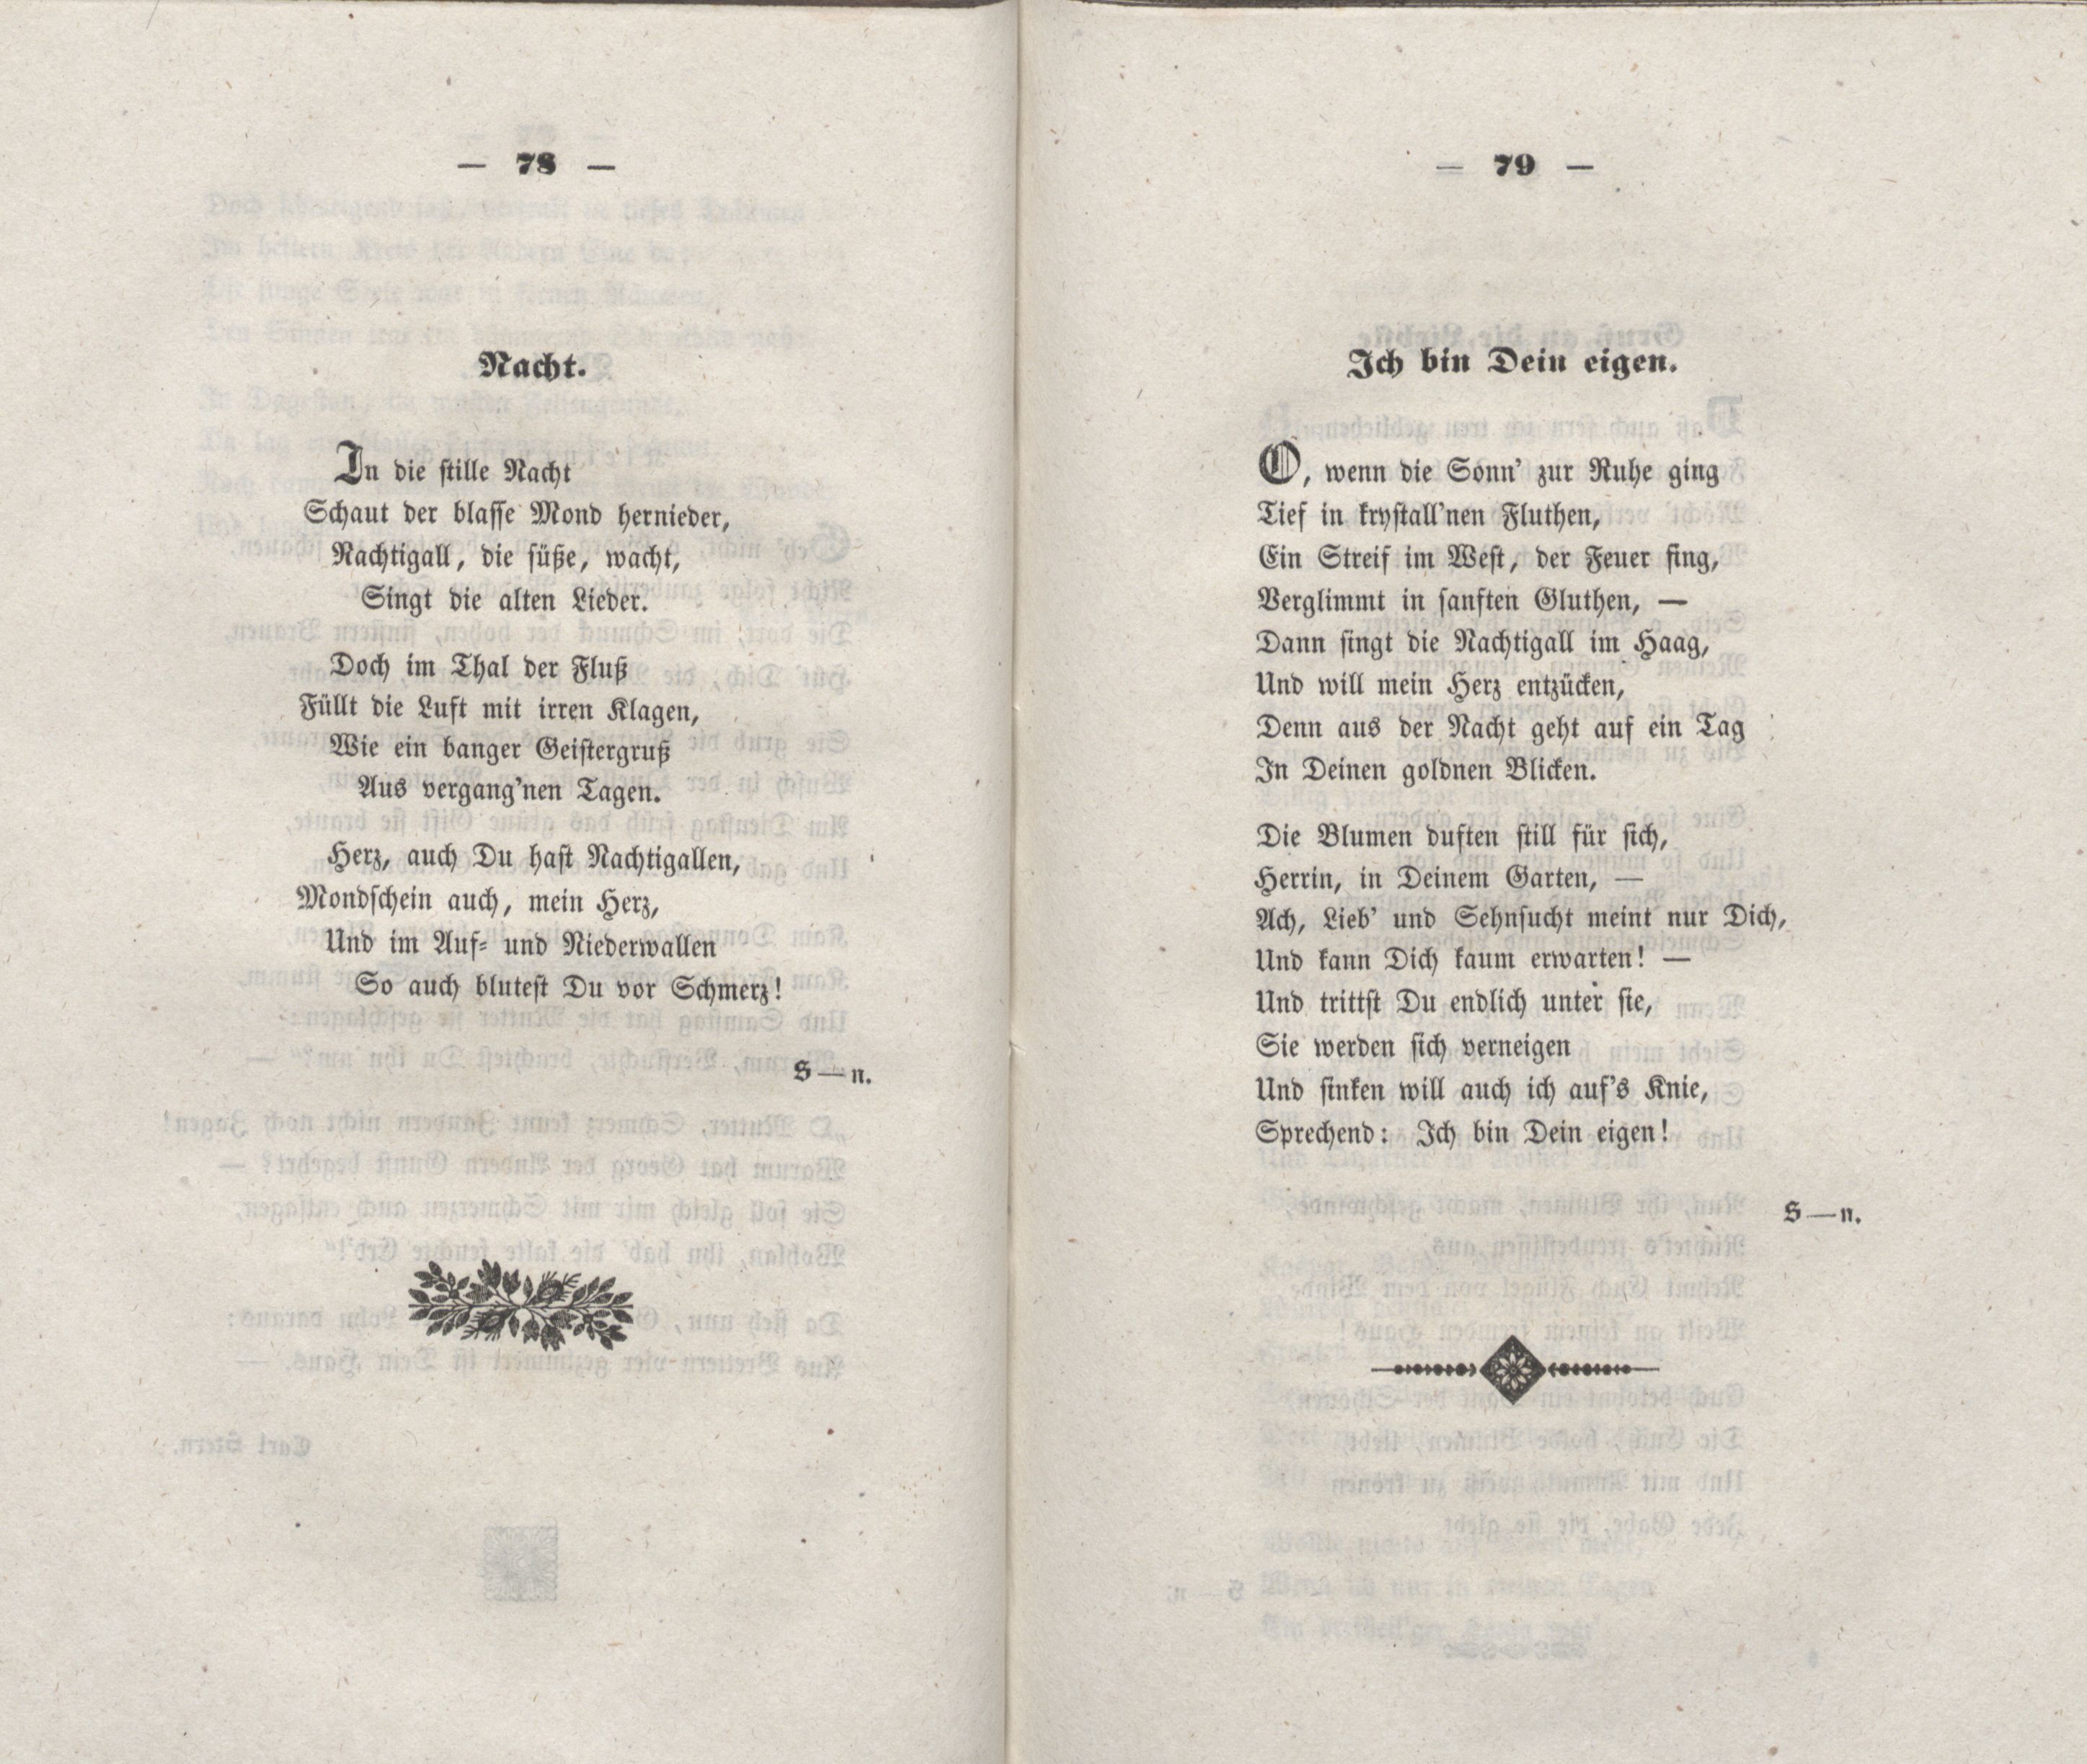 Nacht (1848) | 1. (78-79) Haupttext